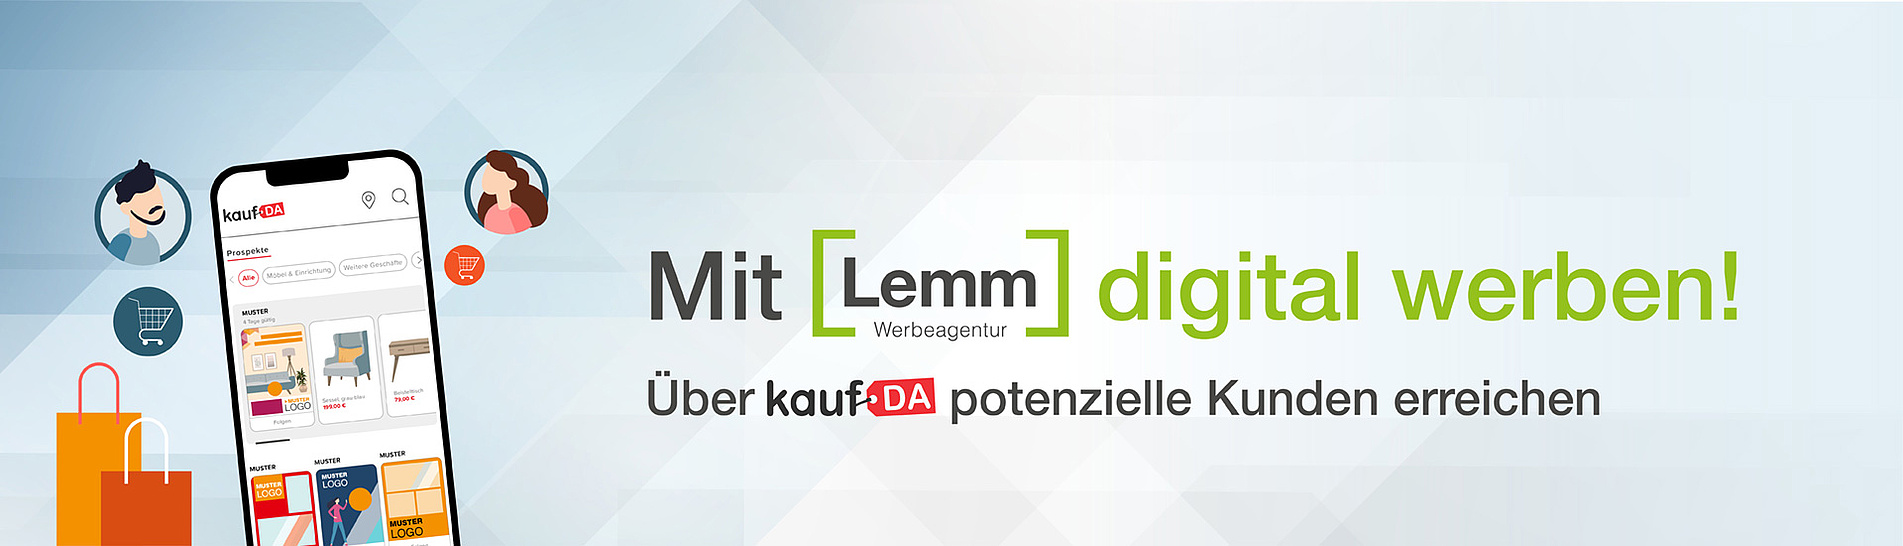 Headerimage - Mit Lemm digital werben!